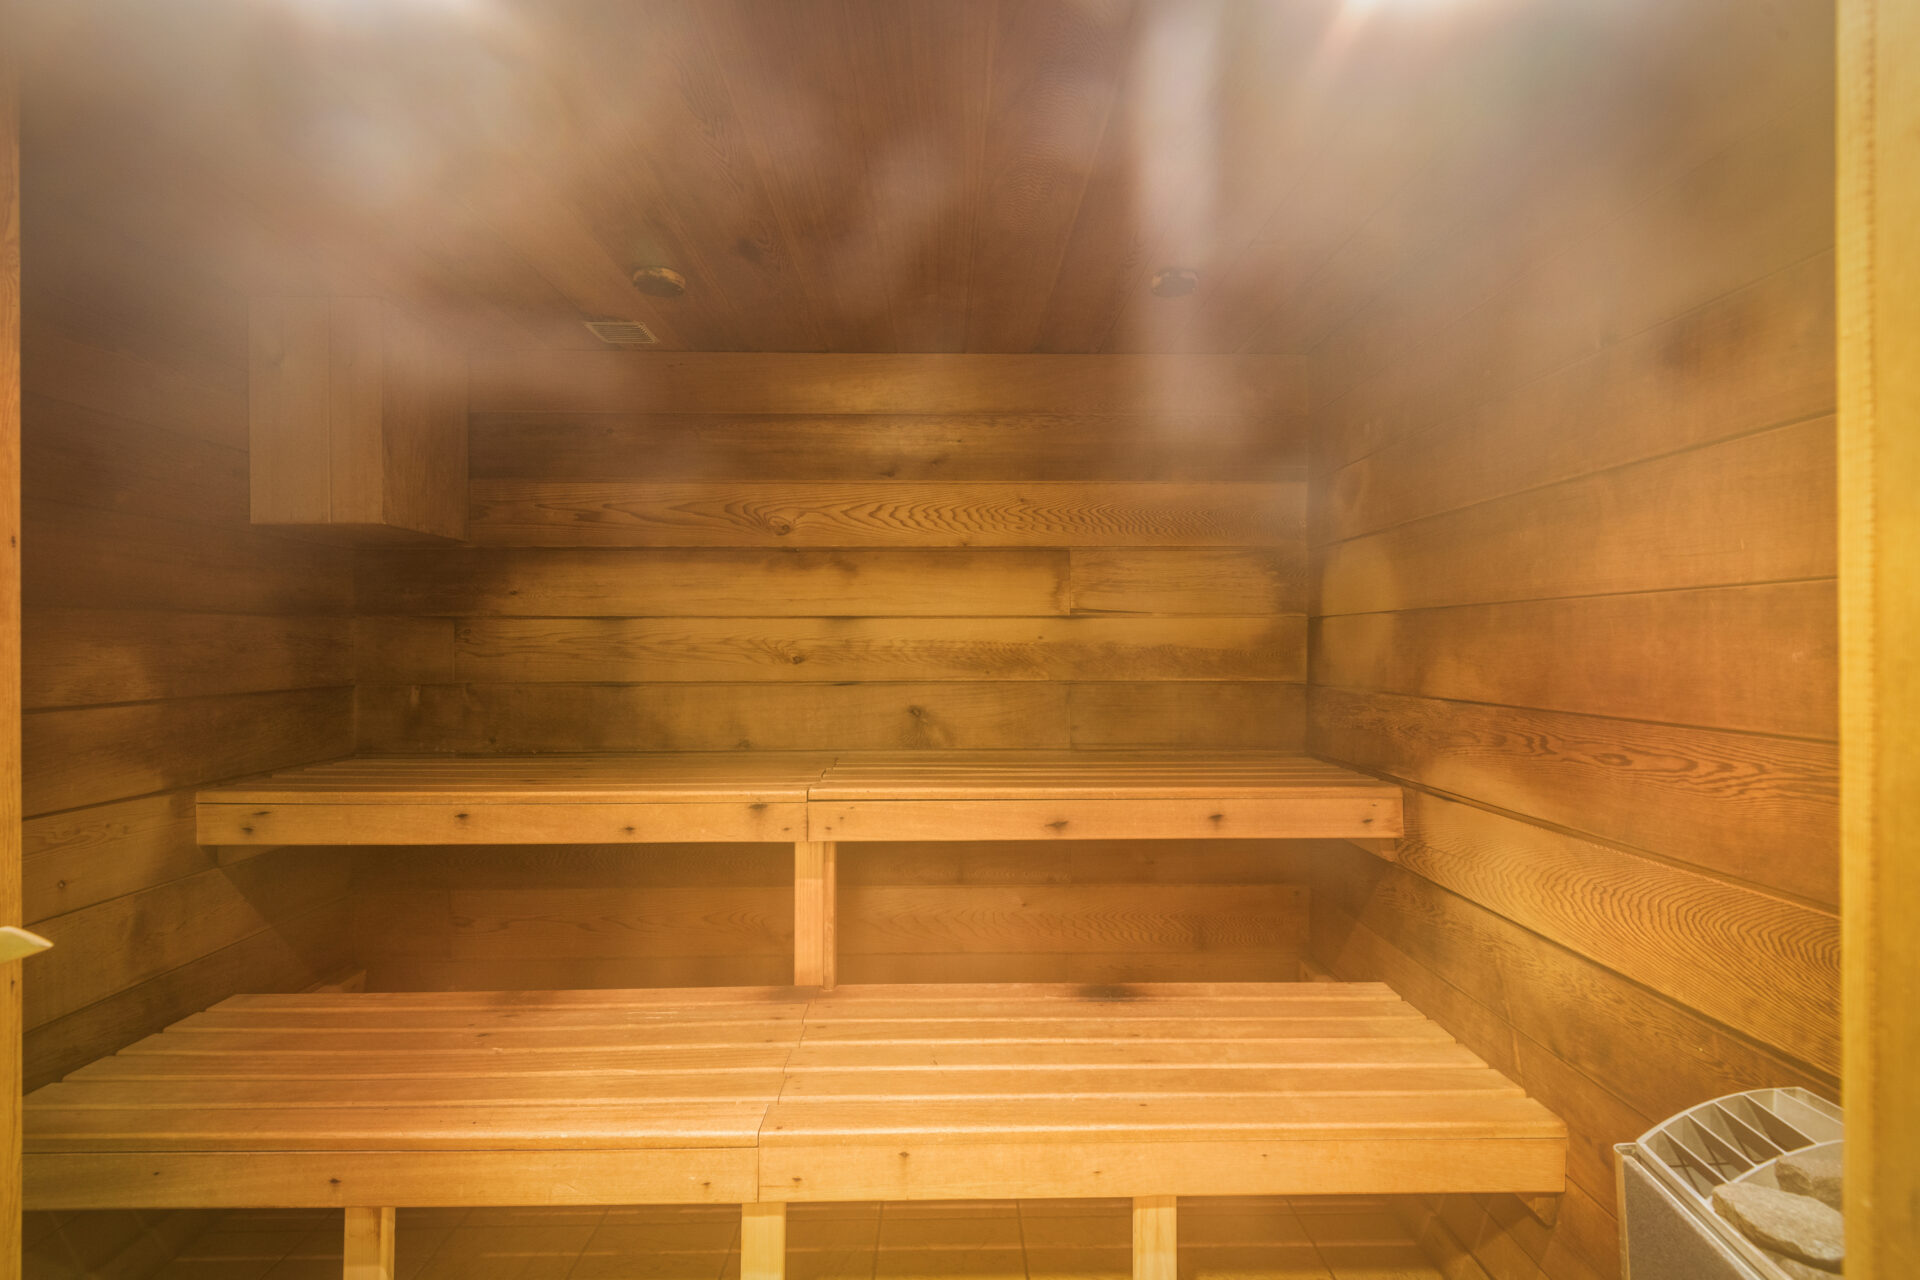 The sauna at Les Fermes du Soleil